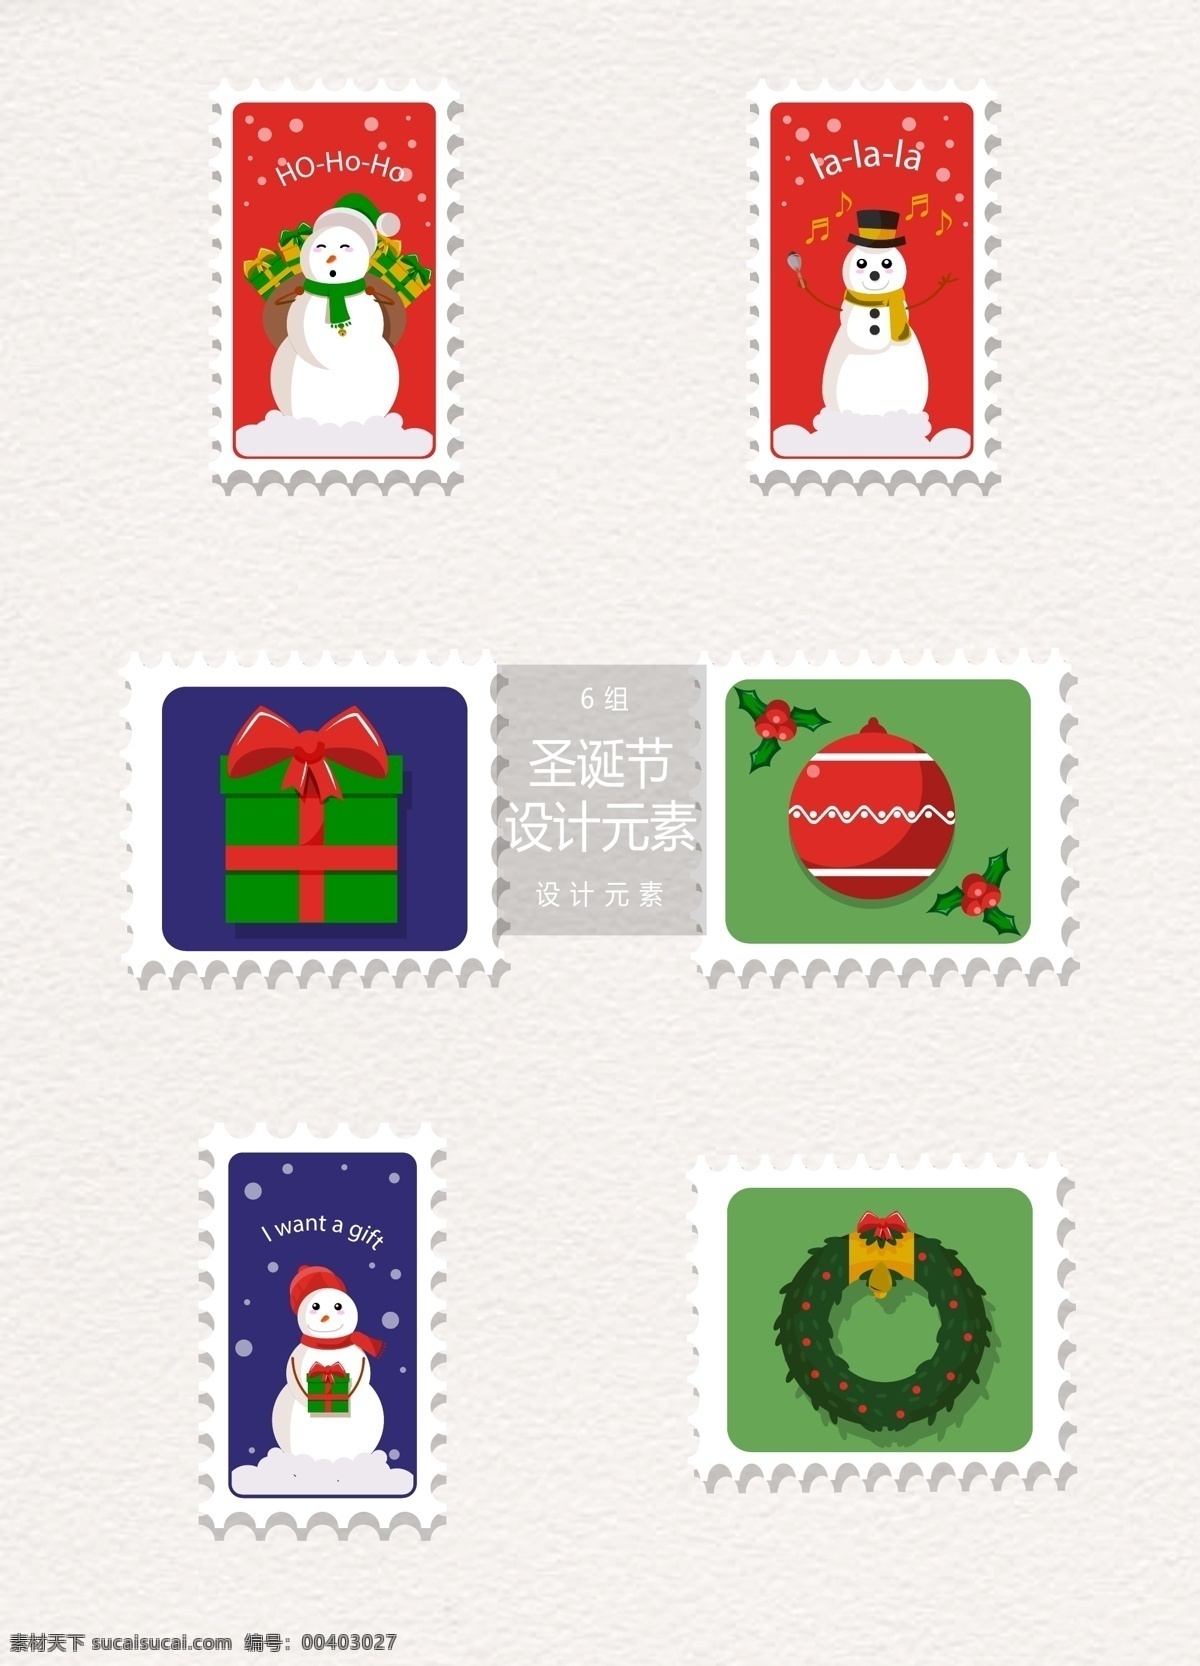 矢量 圣诞节 邮票 标签 元素 冬季 礼物盒 礼物 圣诞节邮票 圣诞 圣诞标签 雪人 圣诞球